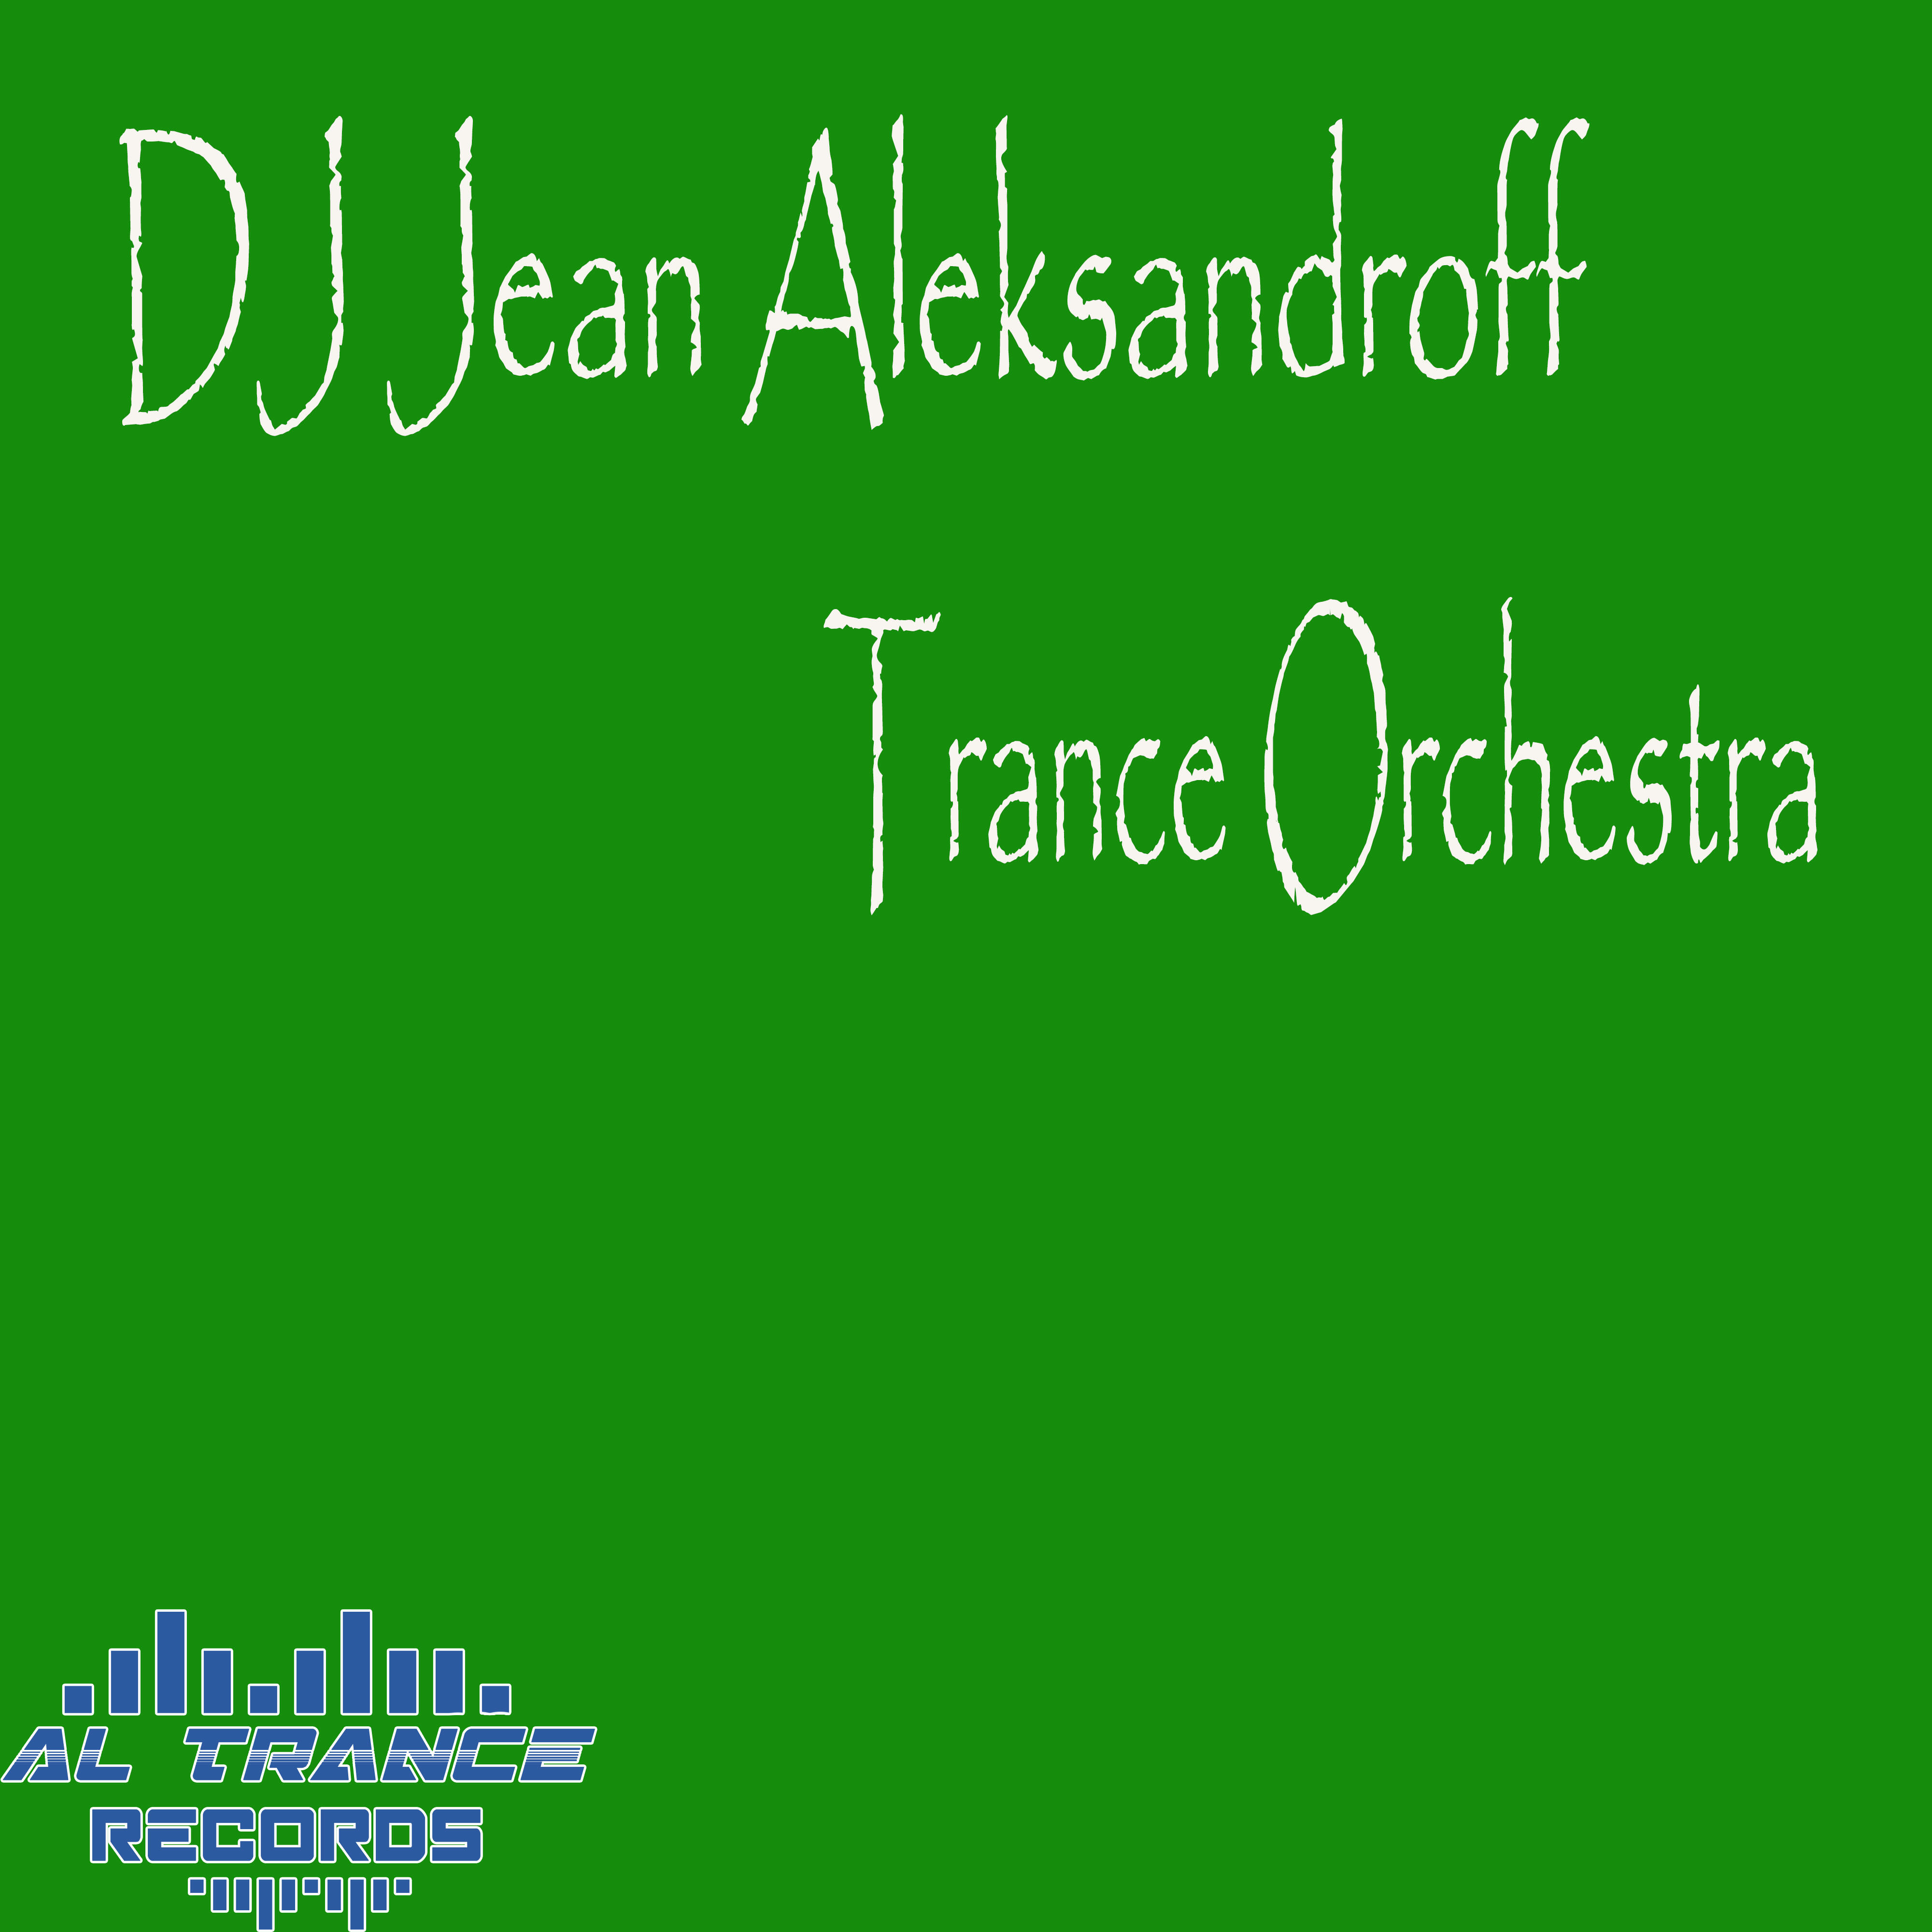 Stream Music from Artists Like Dj Jean Aleksandroff | iHeart